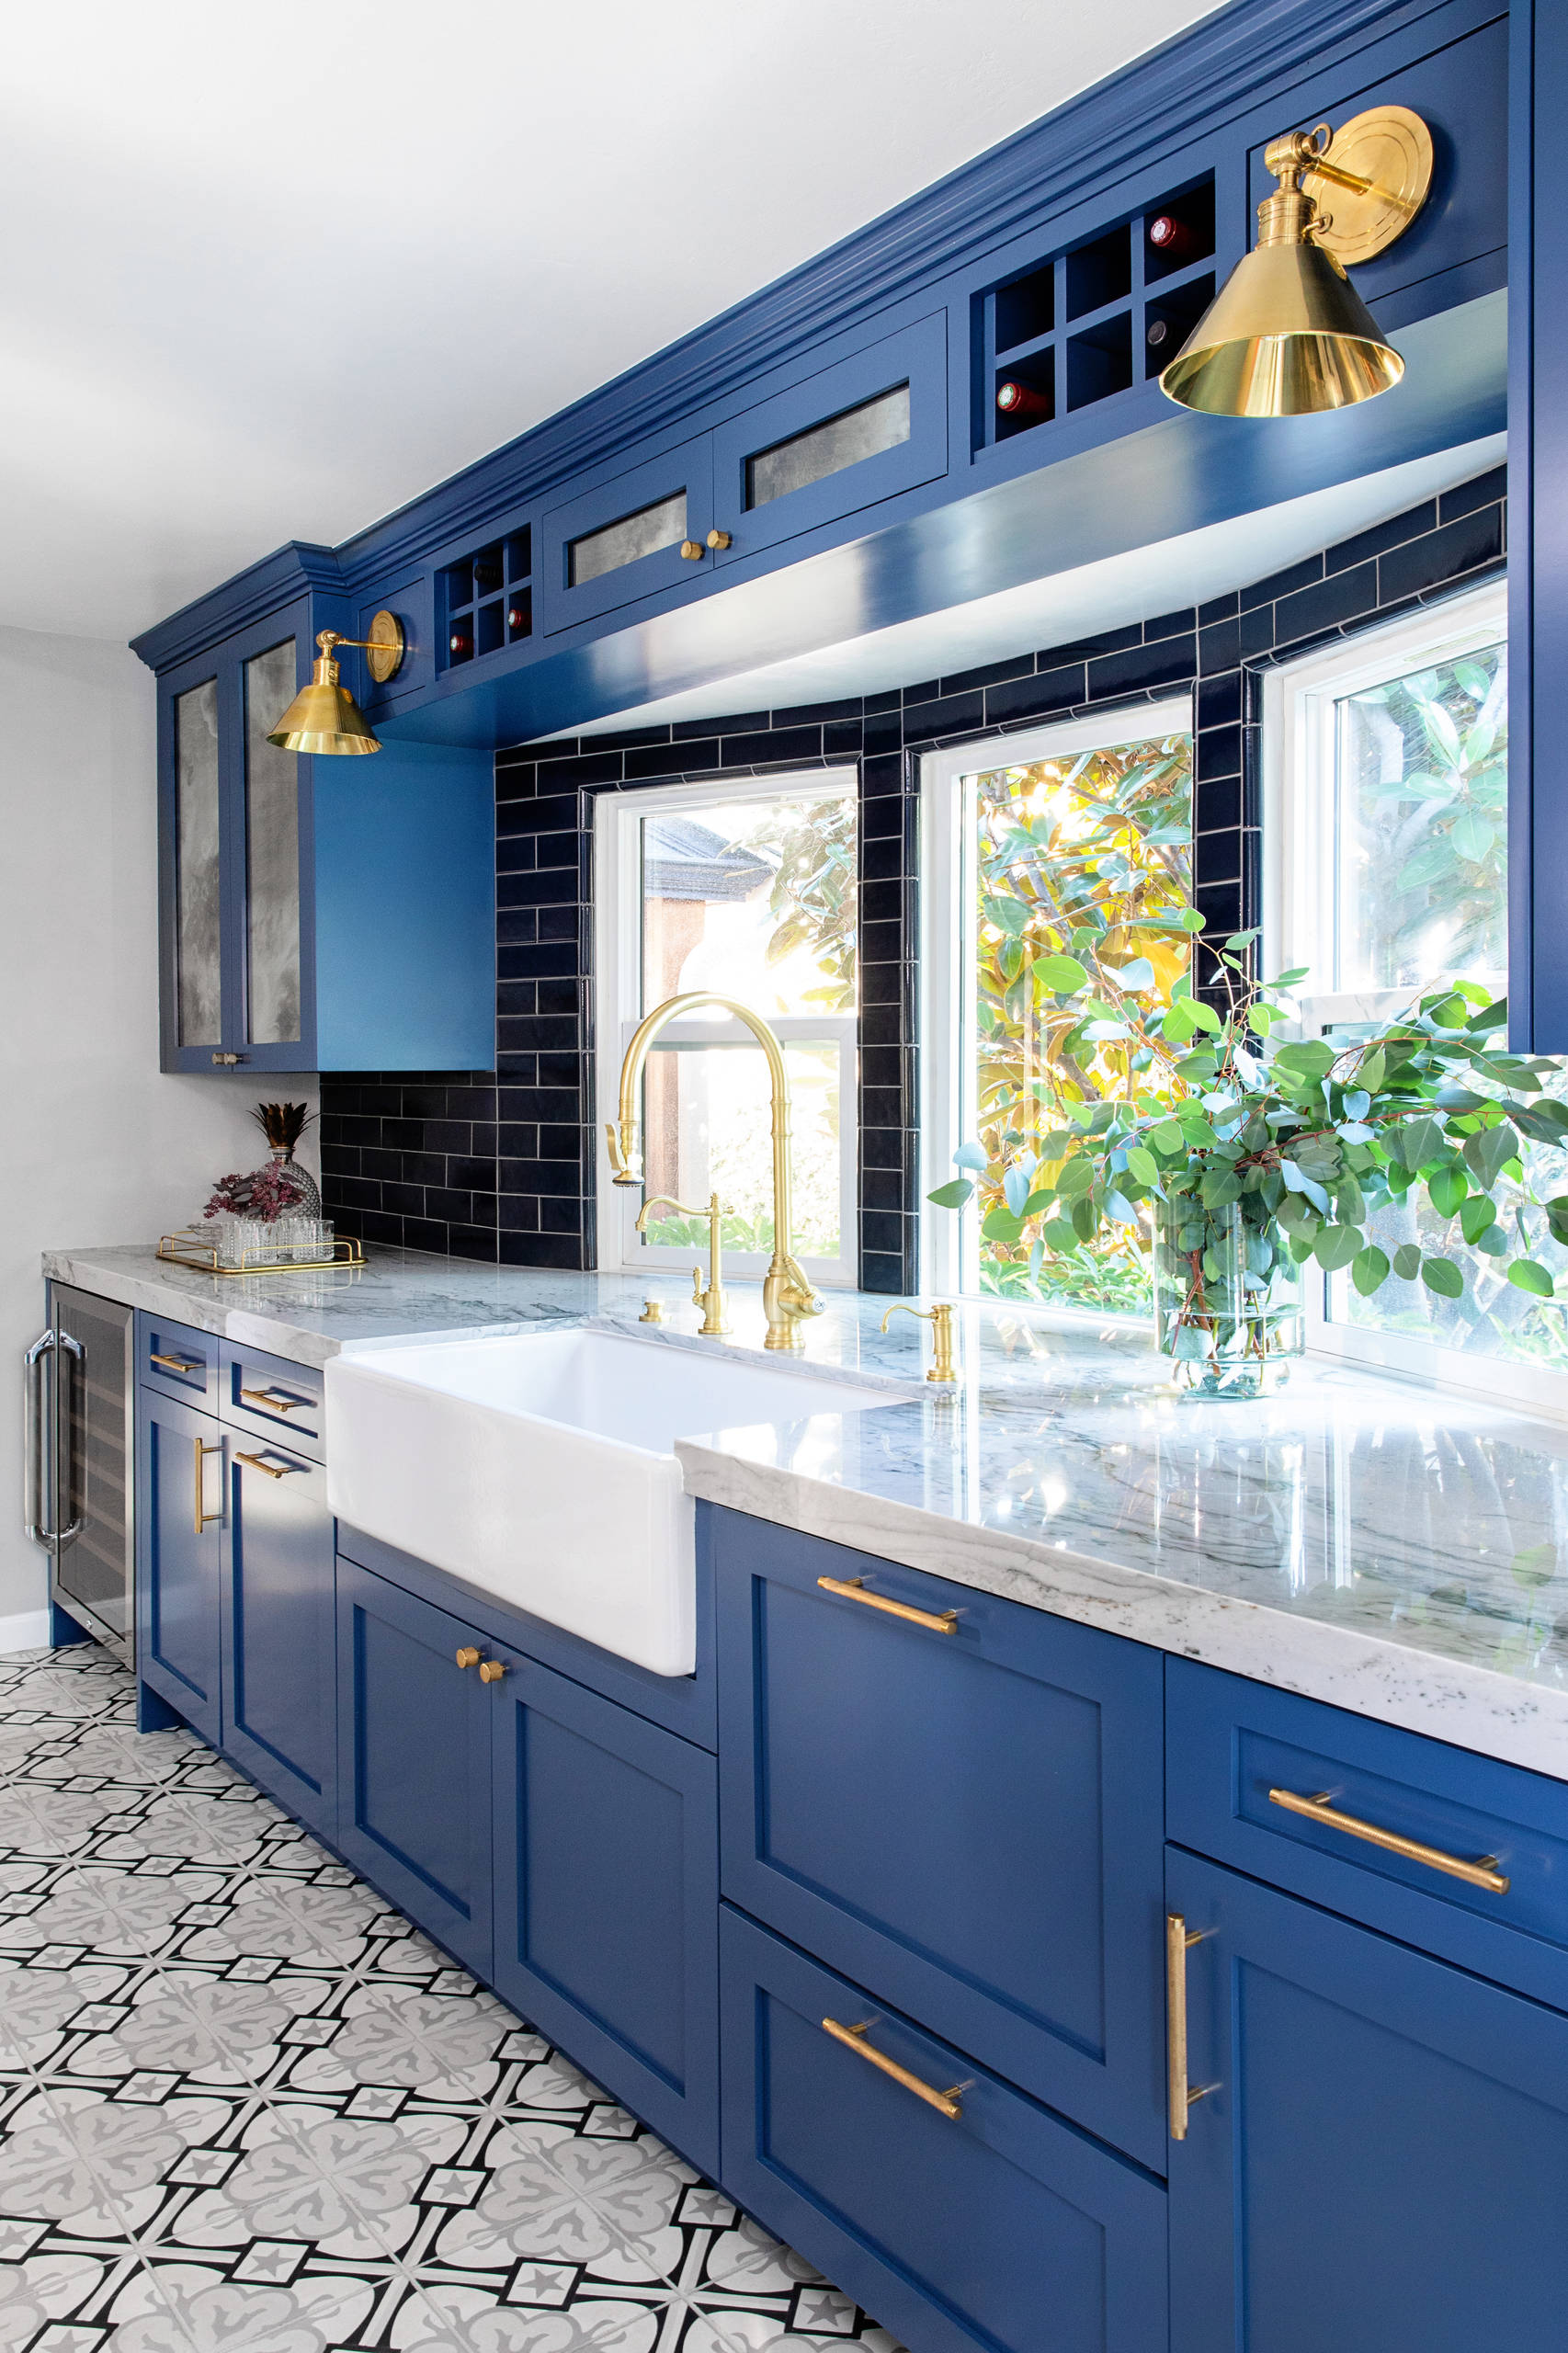 Kitchen Sunmica Design Blue And White : Kitchen Sunmica Design Blue And